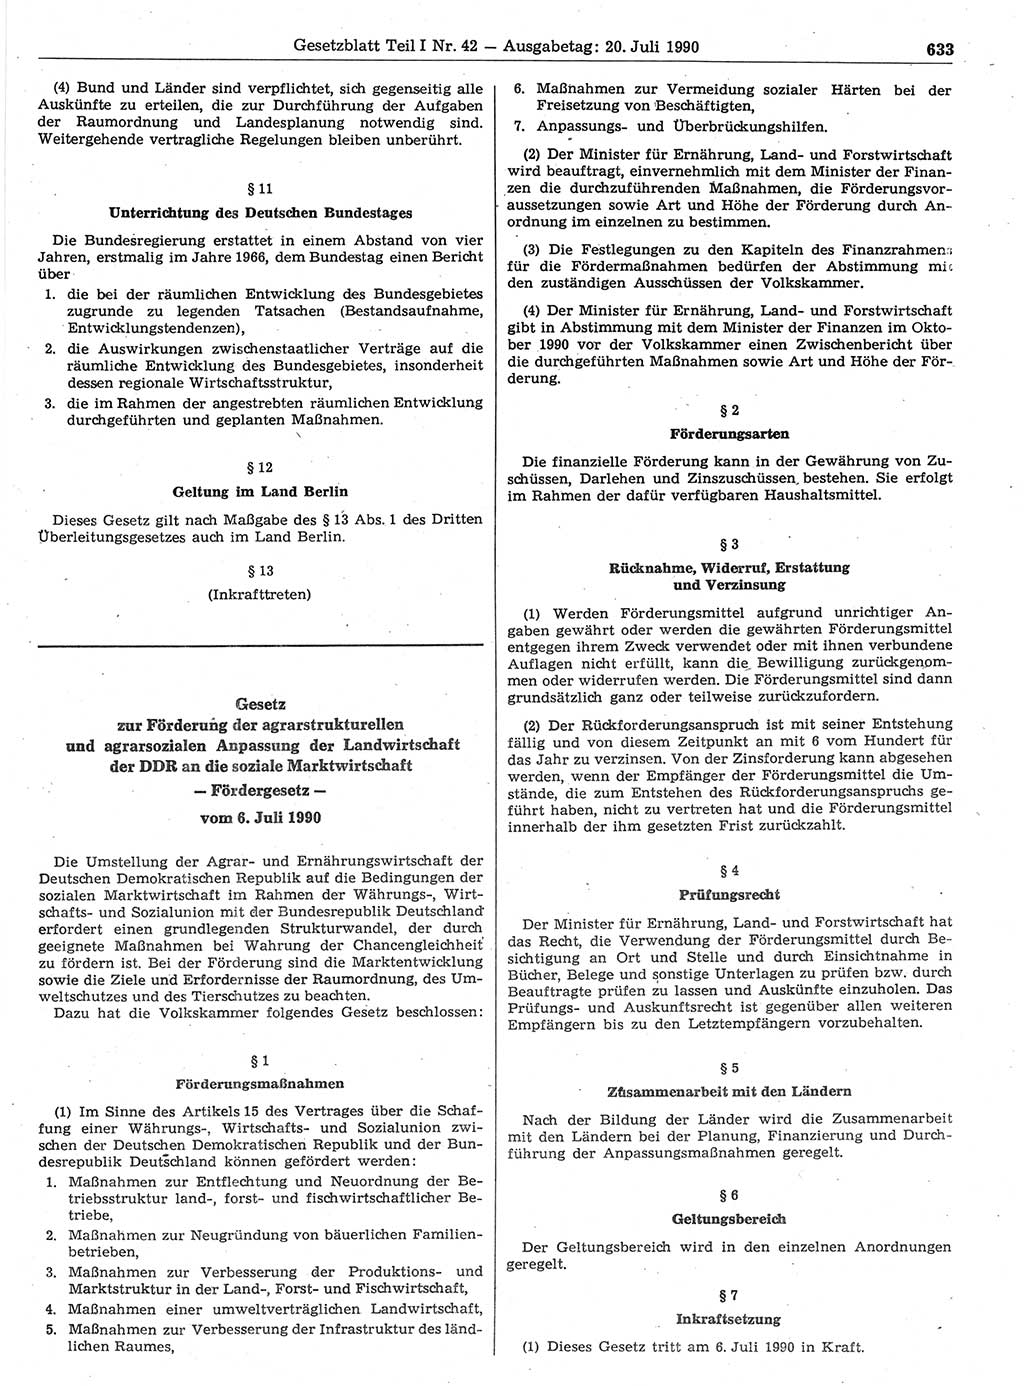 Gesetzblatt (GBl.) der Deutschen Demokratischen Republik (DDR) Teil Ⅰ 1990, Seite 633 (GBl. DDR Ⅰ 1990, S. 633)